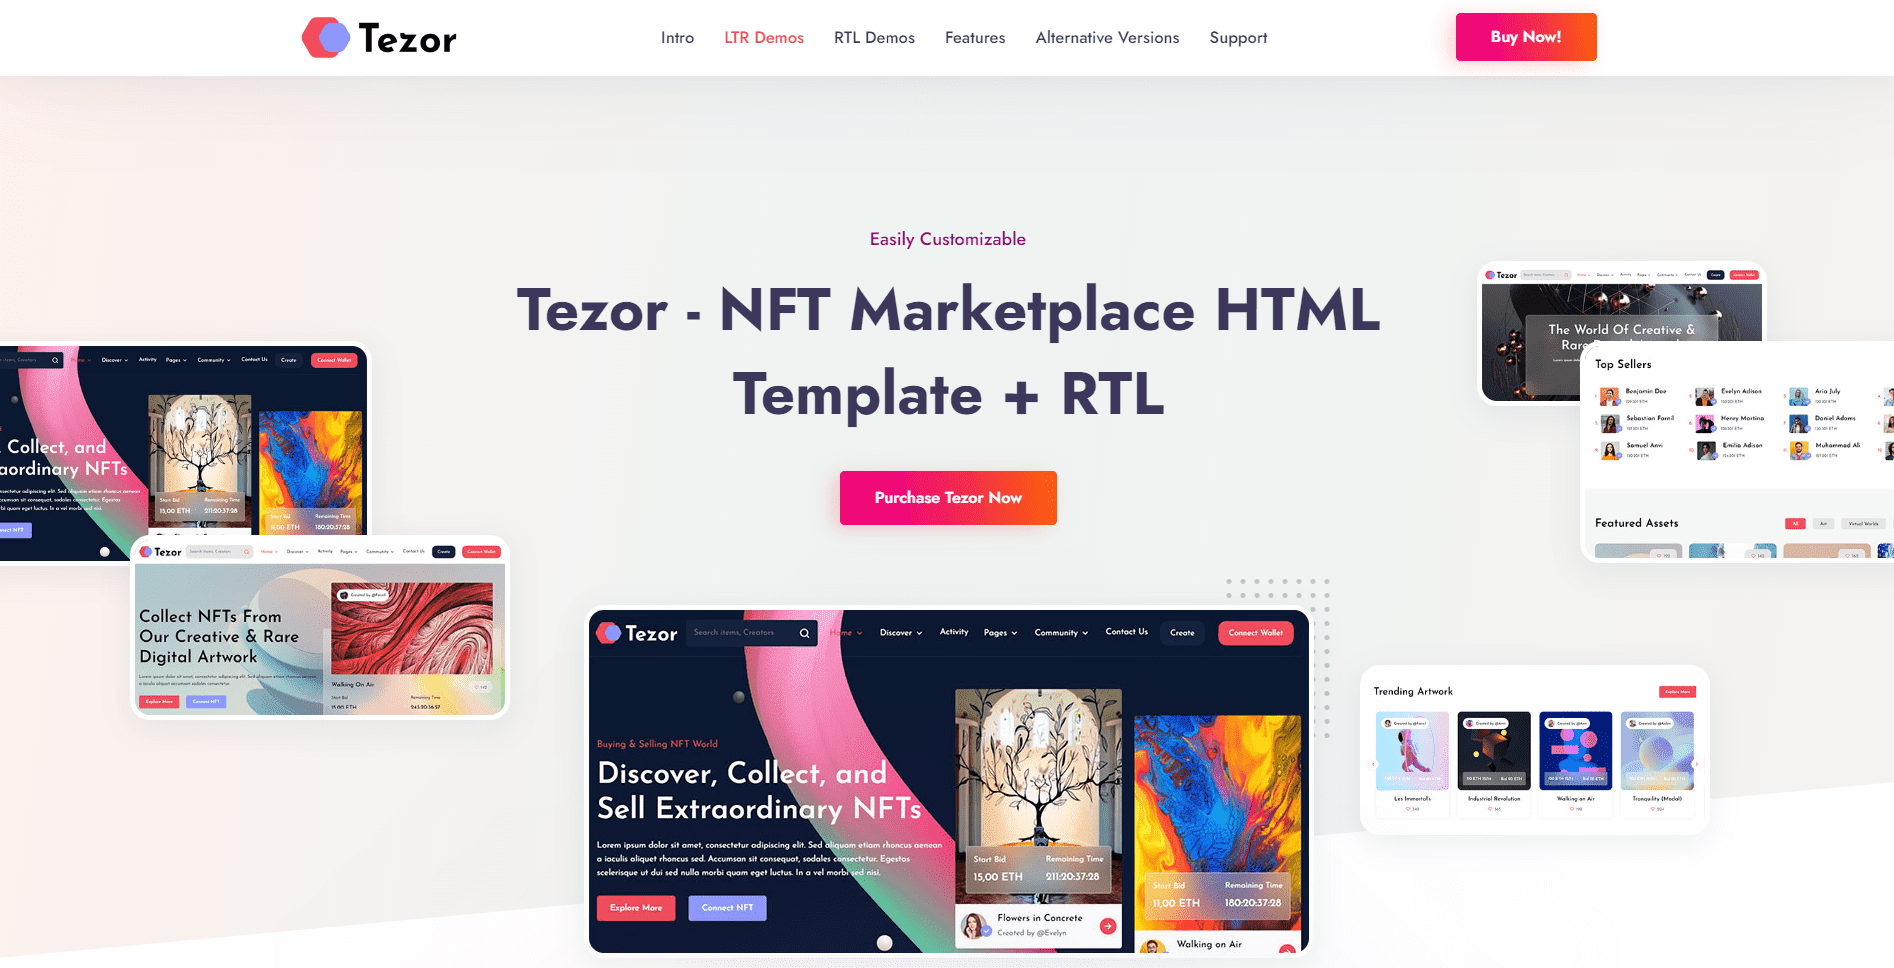 Tezor - NFT Marketplace HTML Template